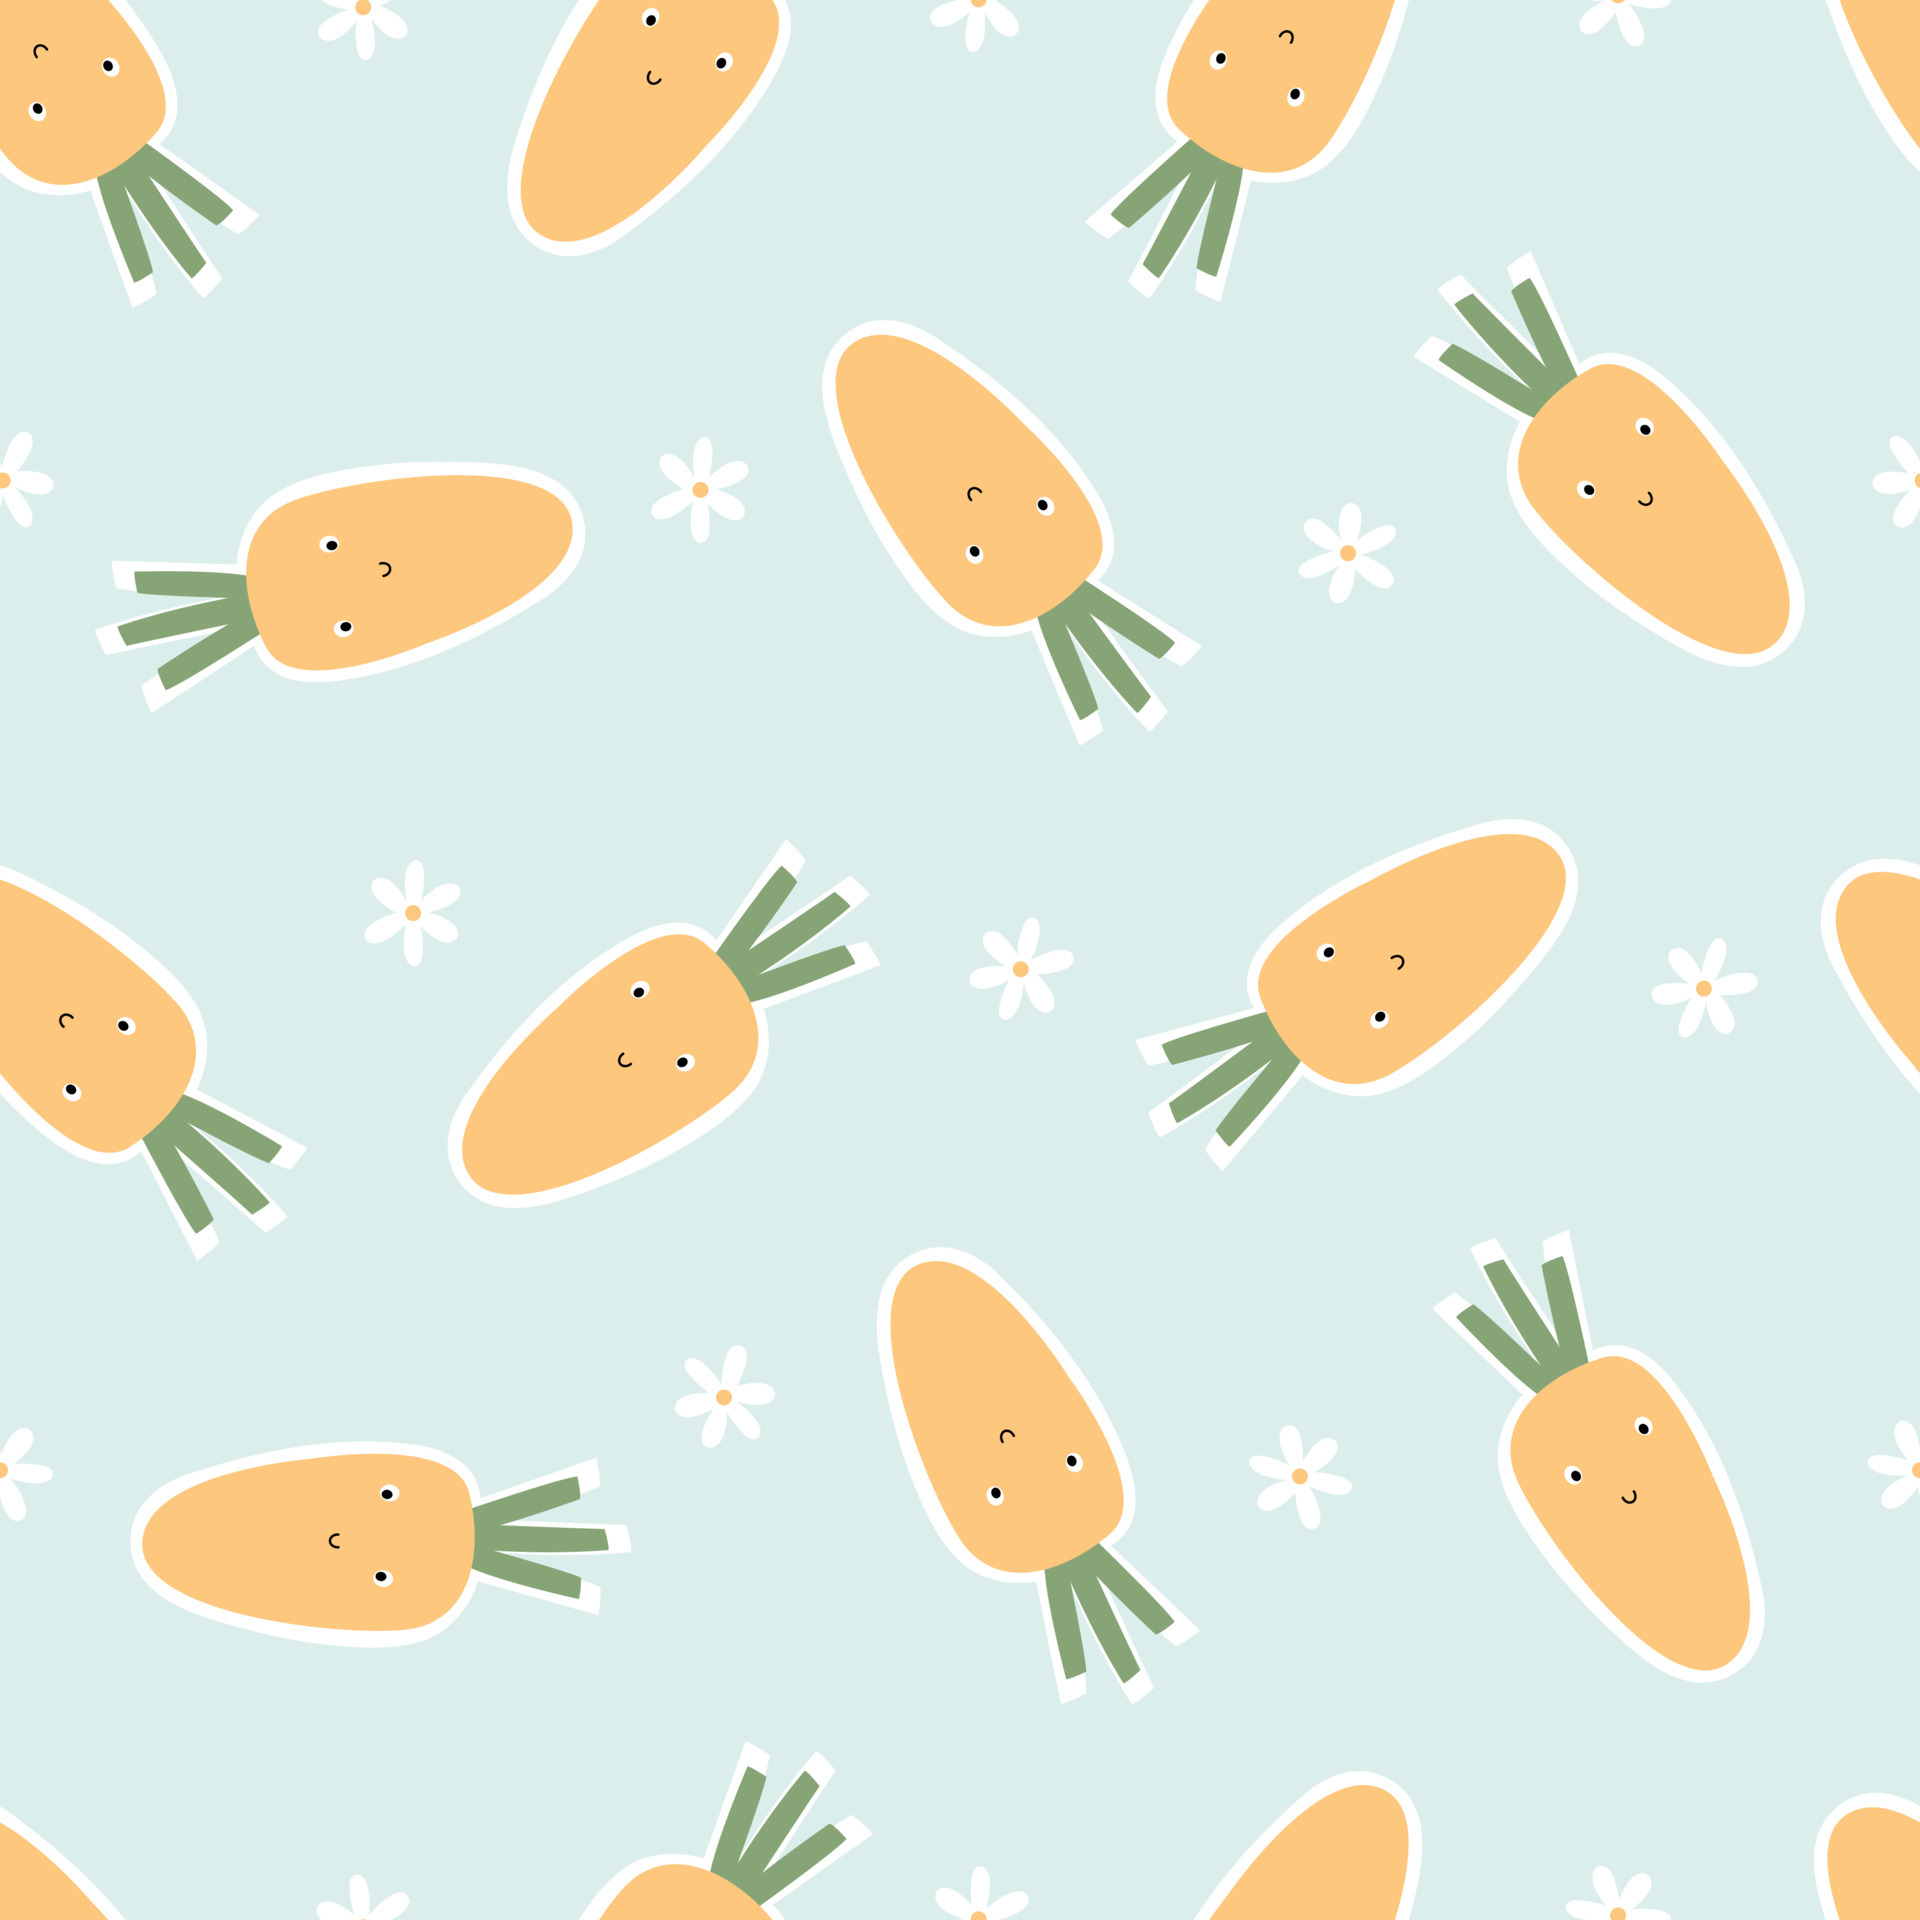 Download Carrot Background Wallpaper RoyaltyFree Stock Illustration Image   Pixabay